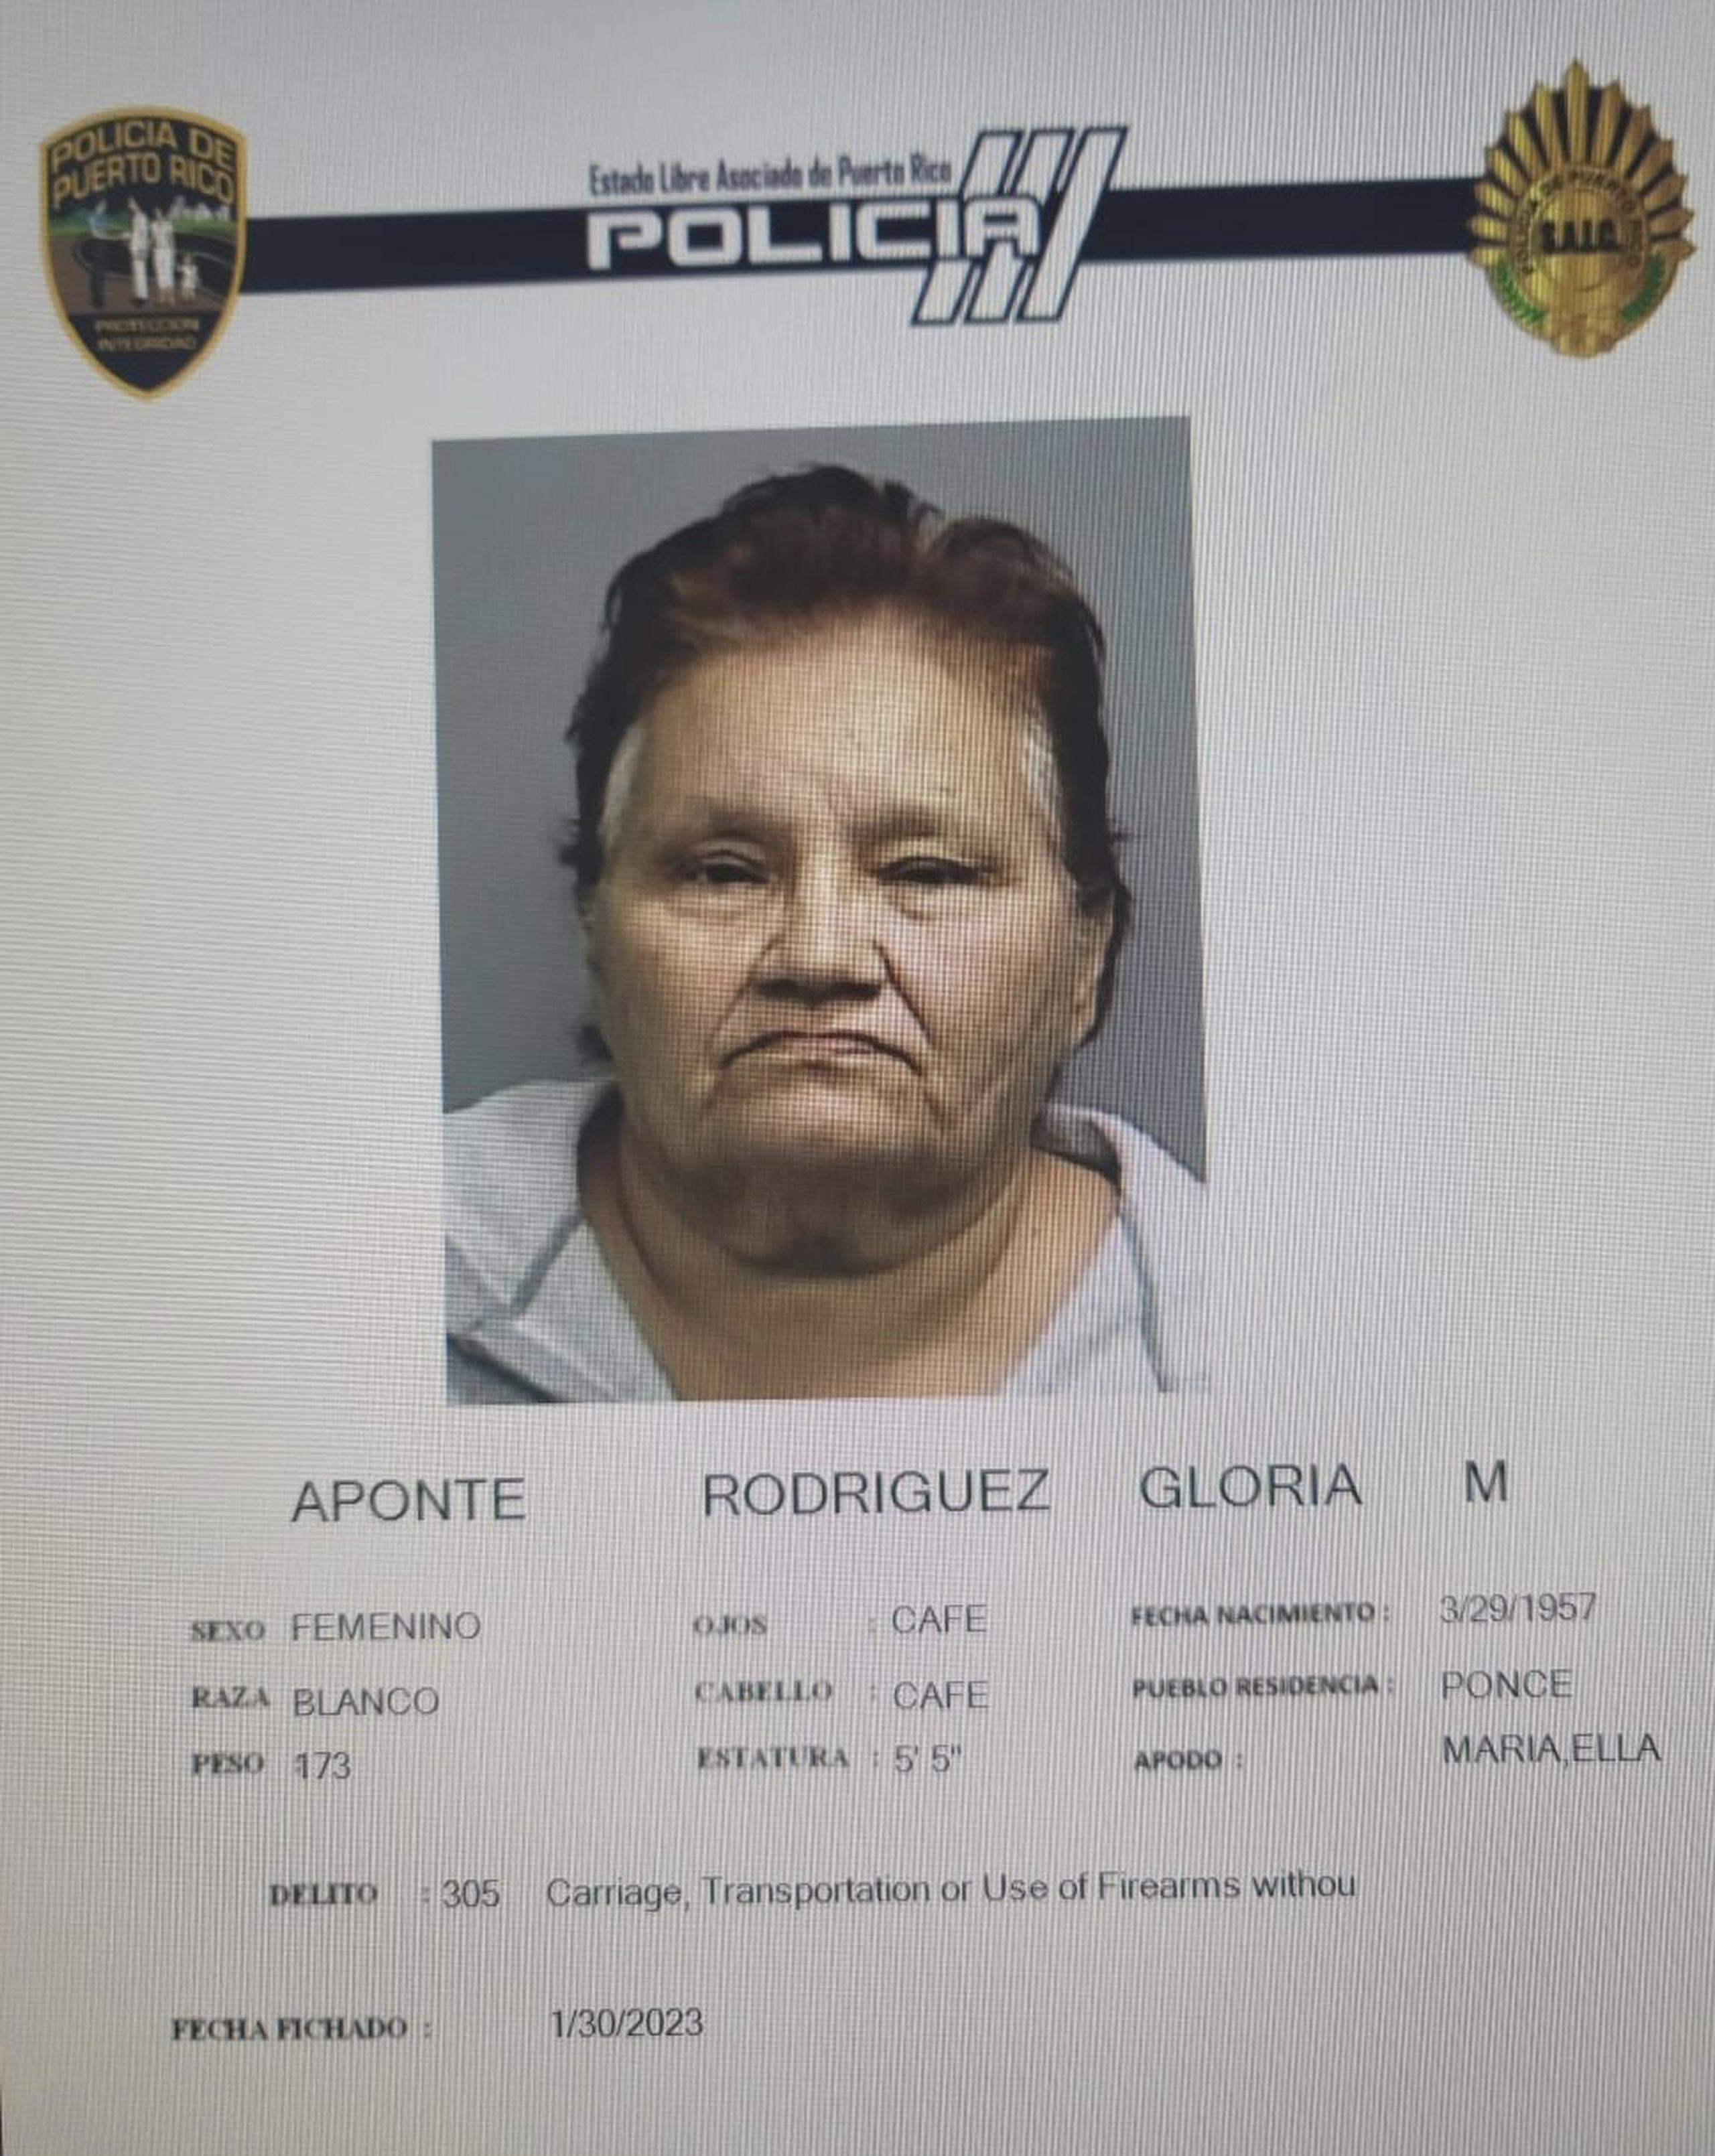 Gloria M. Aponte Rodríguez enfrenta cargos por los delitos de robo agravado, 6.05 (portación, transportación o uso de armas de fuego sin licencia) de La Ley de Armas y amenaza.